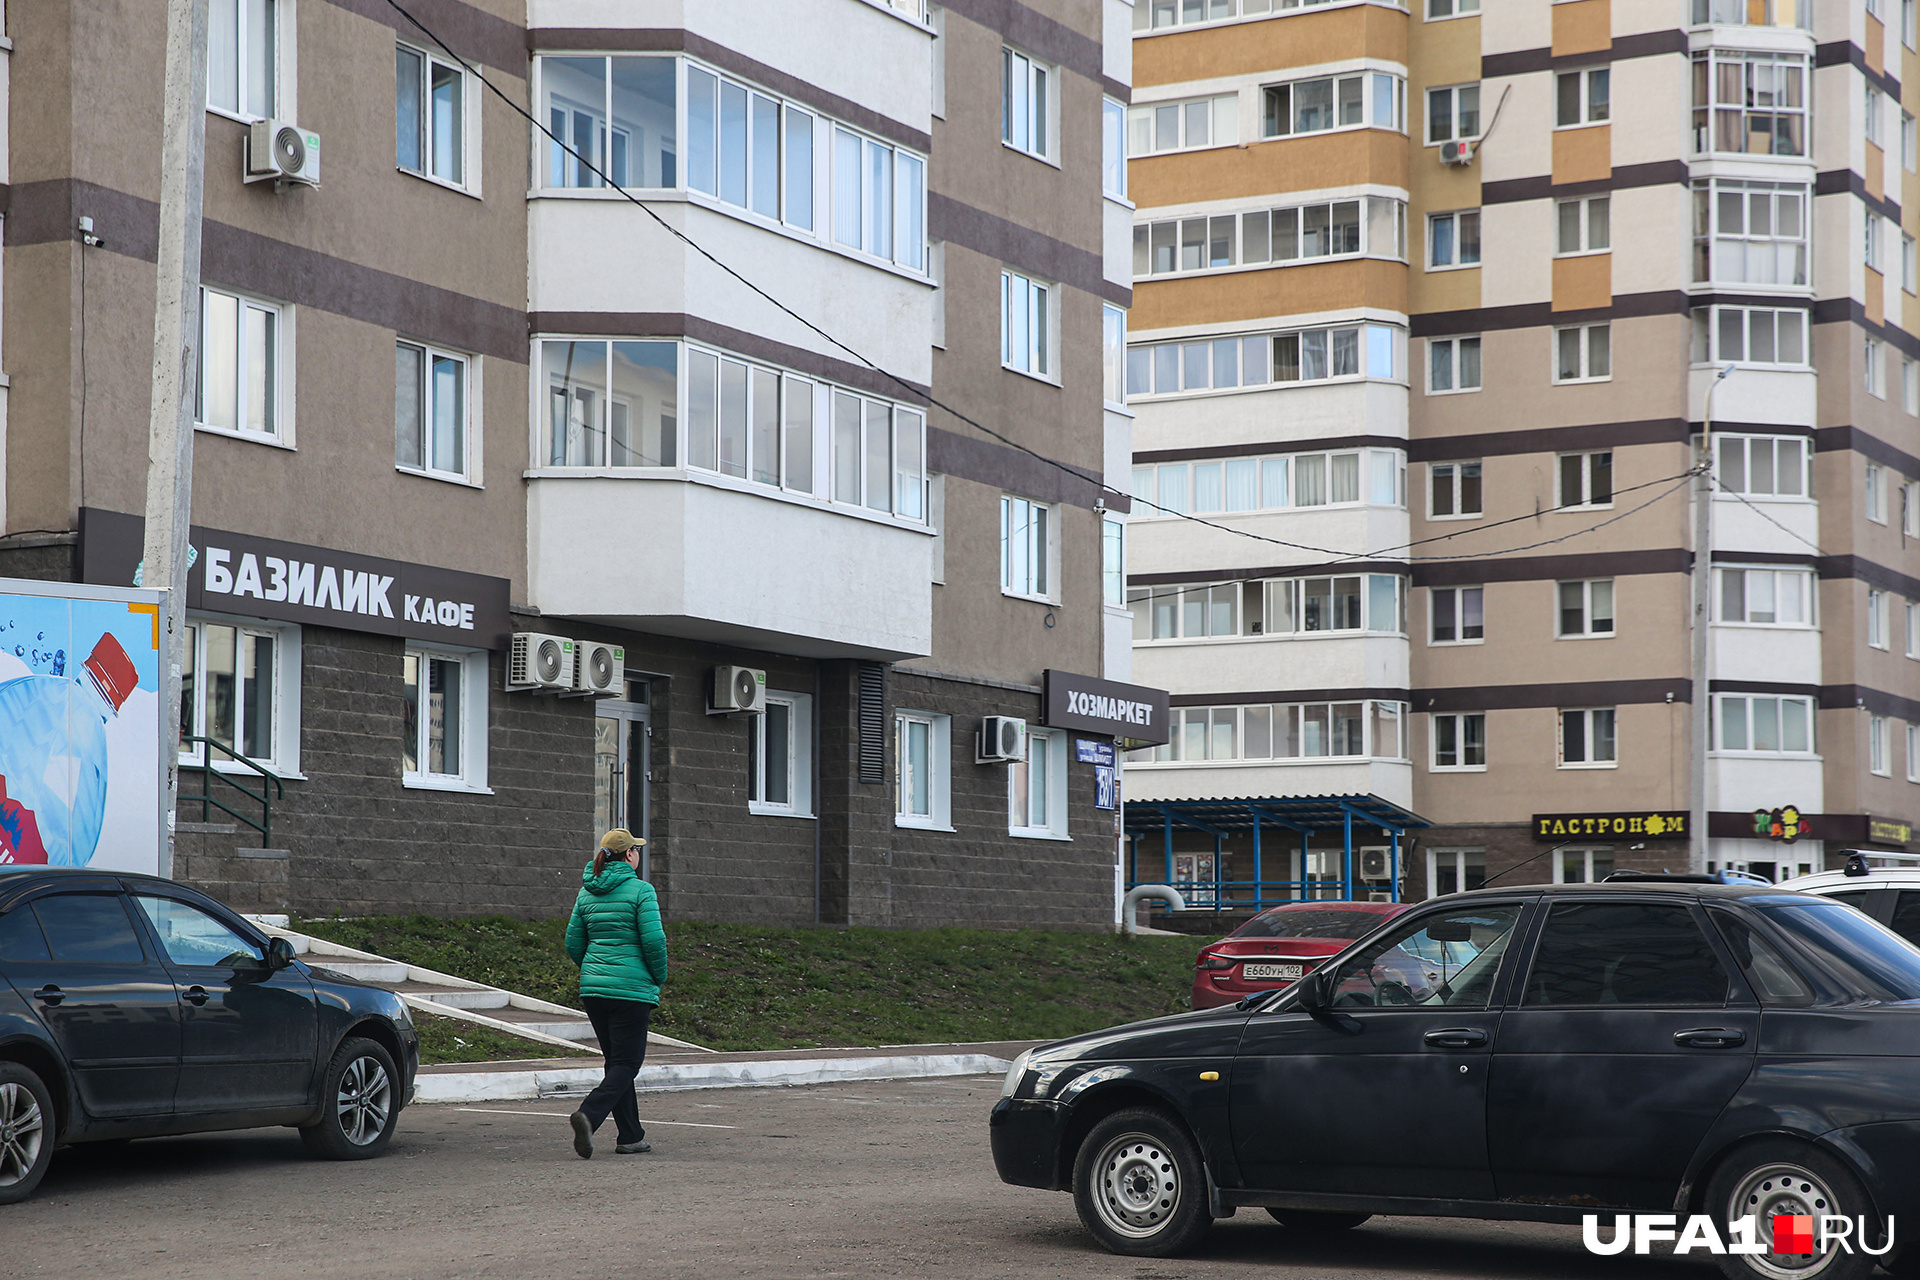 Три торговых точки и квартира Шайбаковых оказались расположены буквально в шаге друг от друга